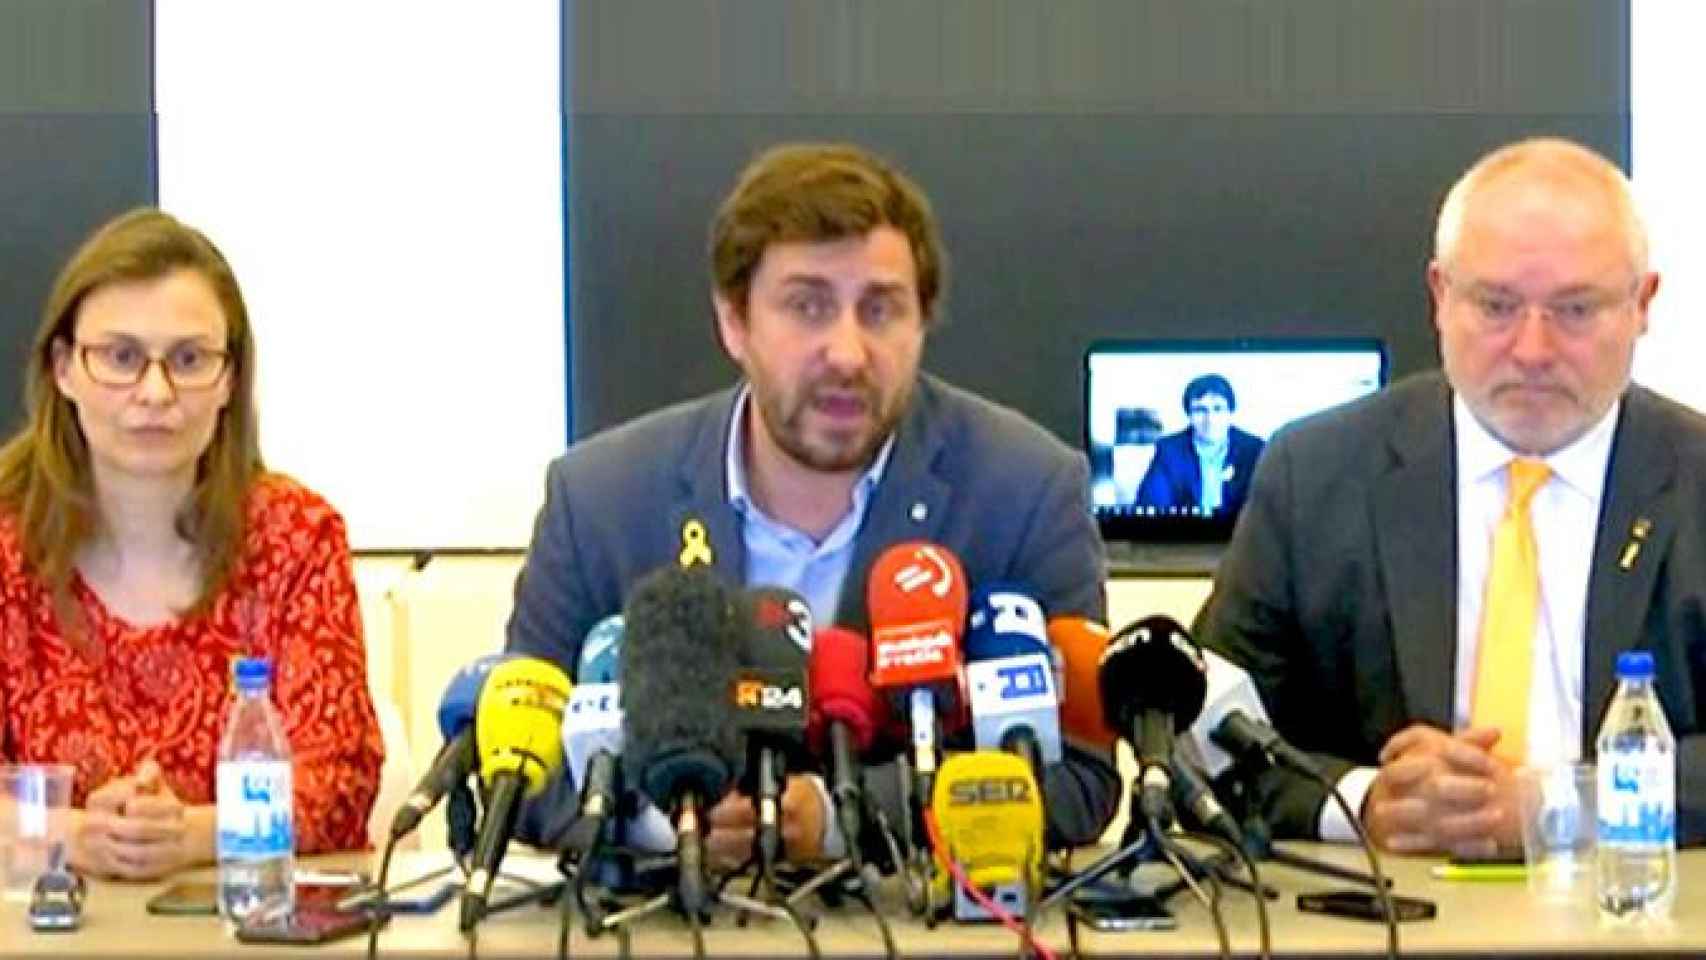 Toni Comín con Meritxel Serret y Lluis Puig, anunciando acciones legales contra Llarena desde Bélgica / CG